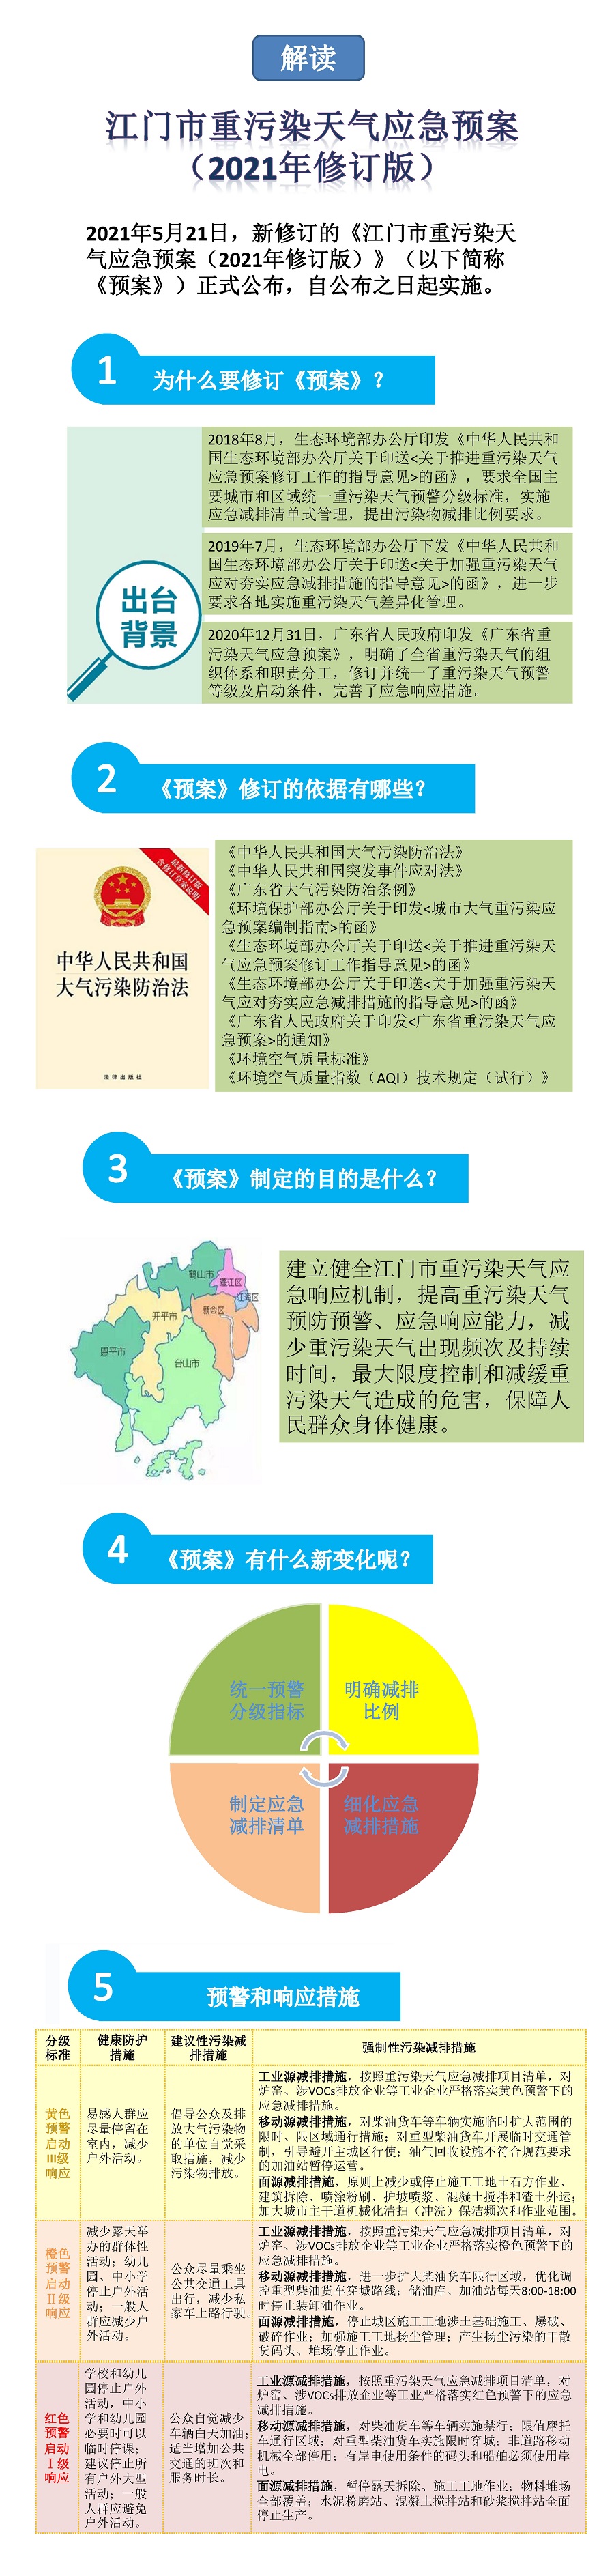 20210616-江门市重污染天气应急预案（2021年版）图解.jpg